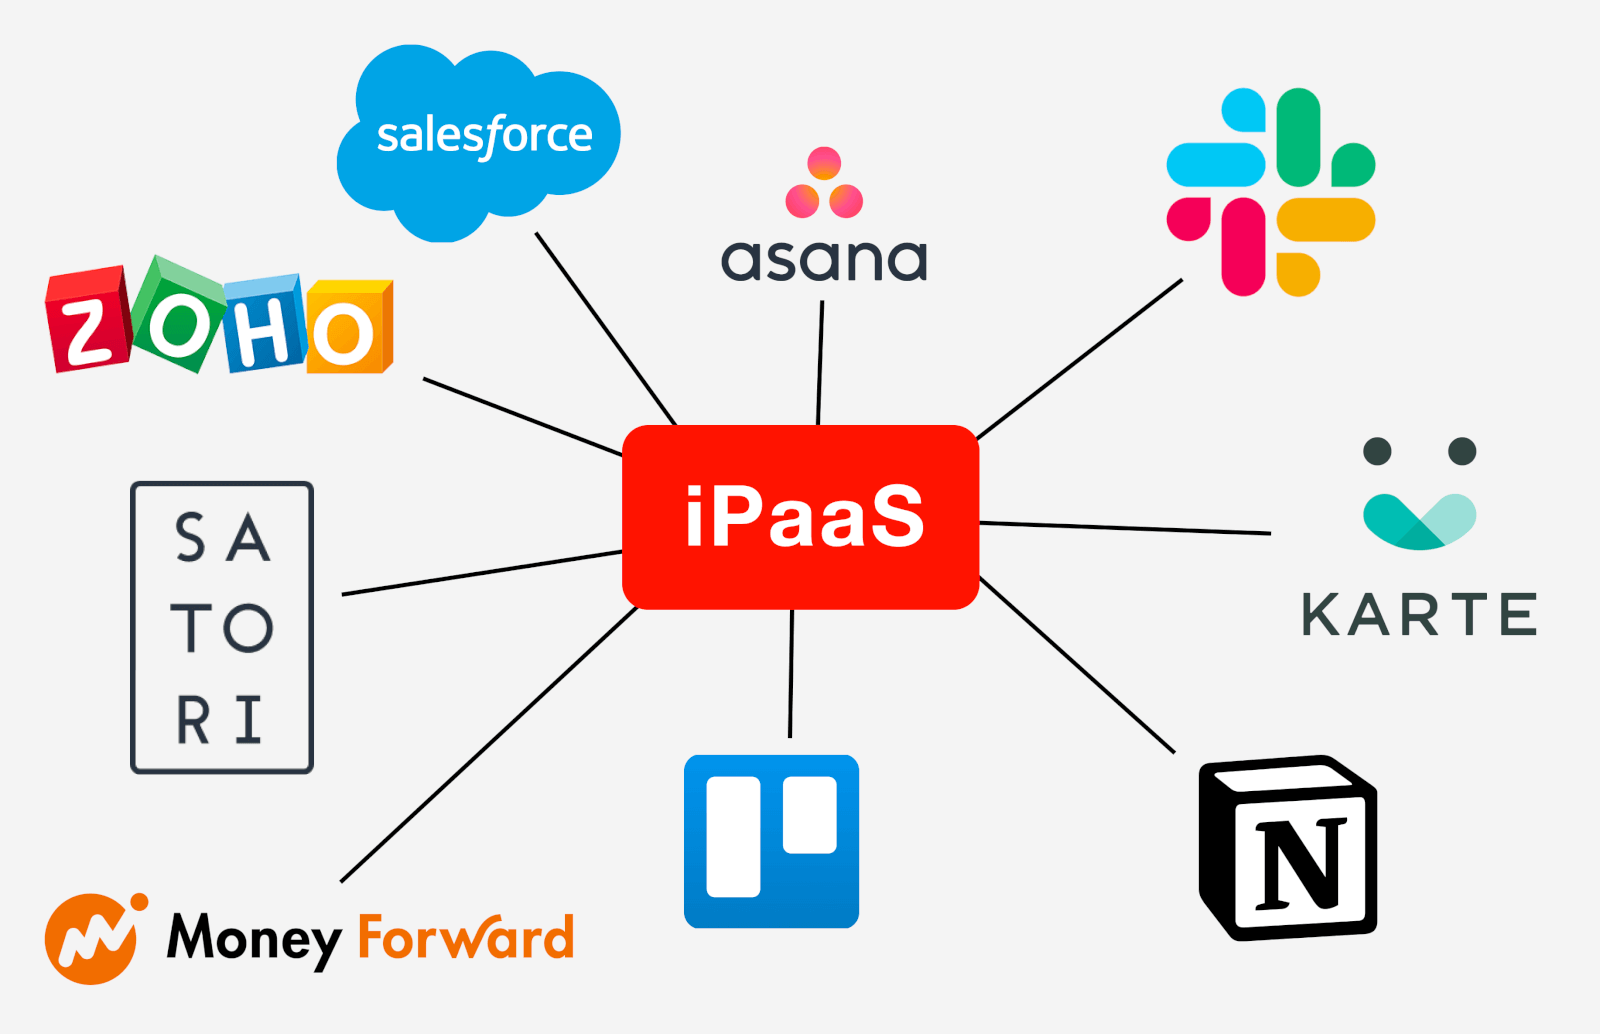 iPaaSの図解